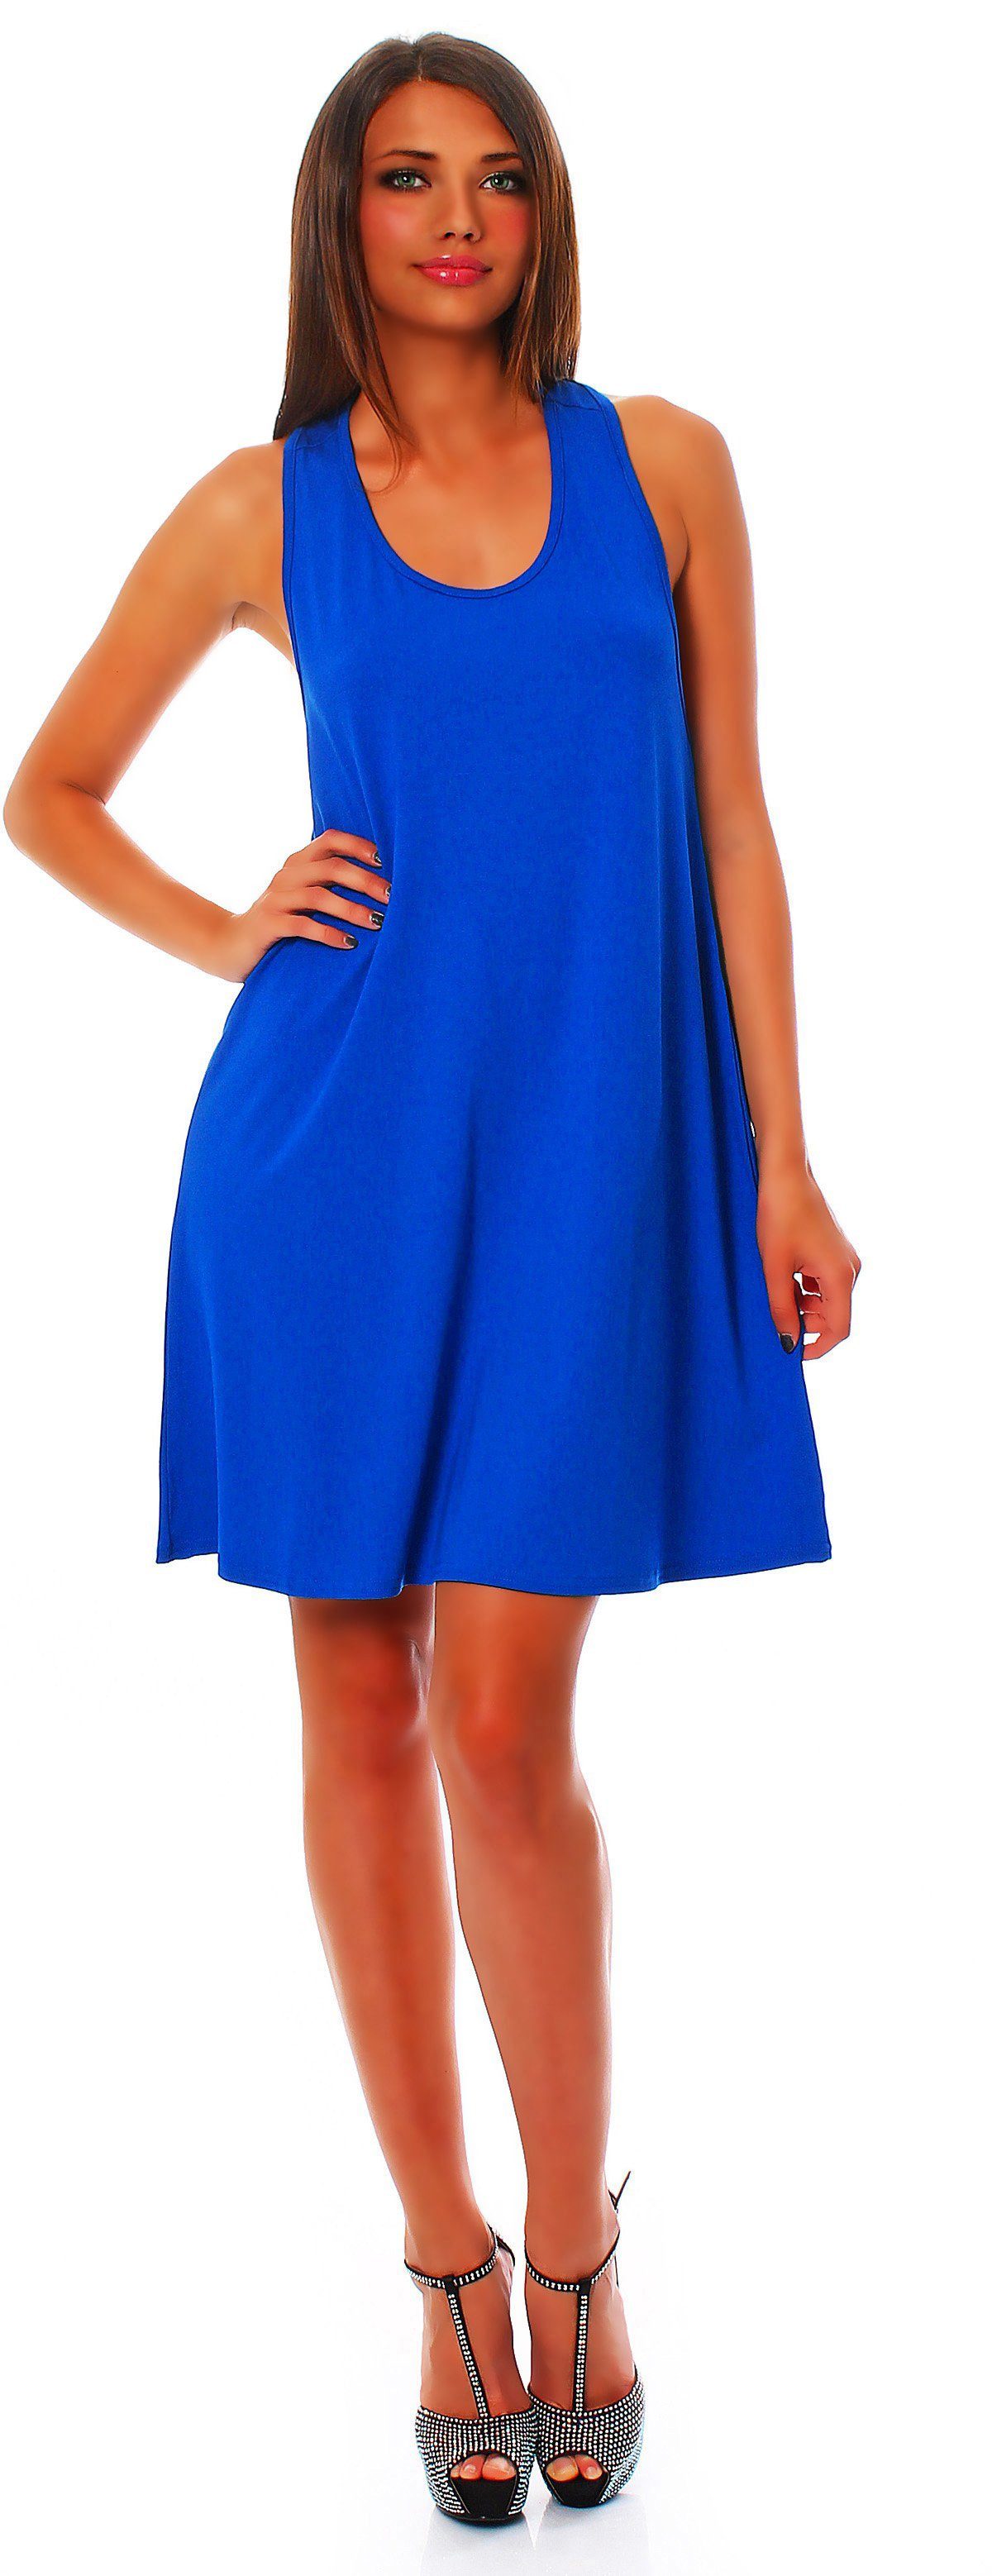 Mississhop Sommerkleid Minikleid mit schulterfrei Blau Schlaufen überkreuzten